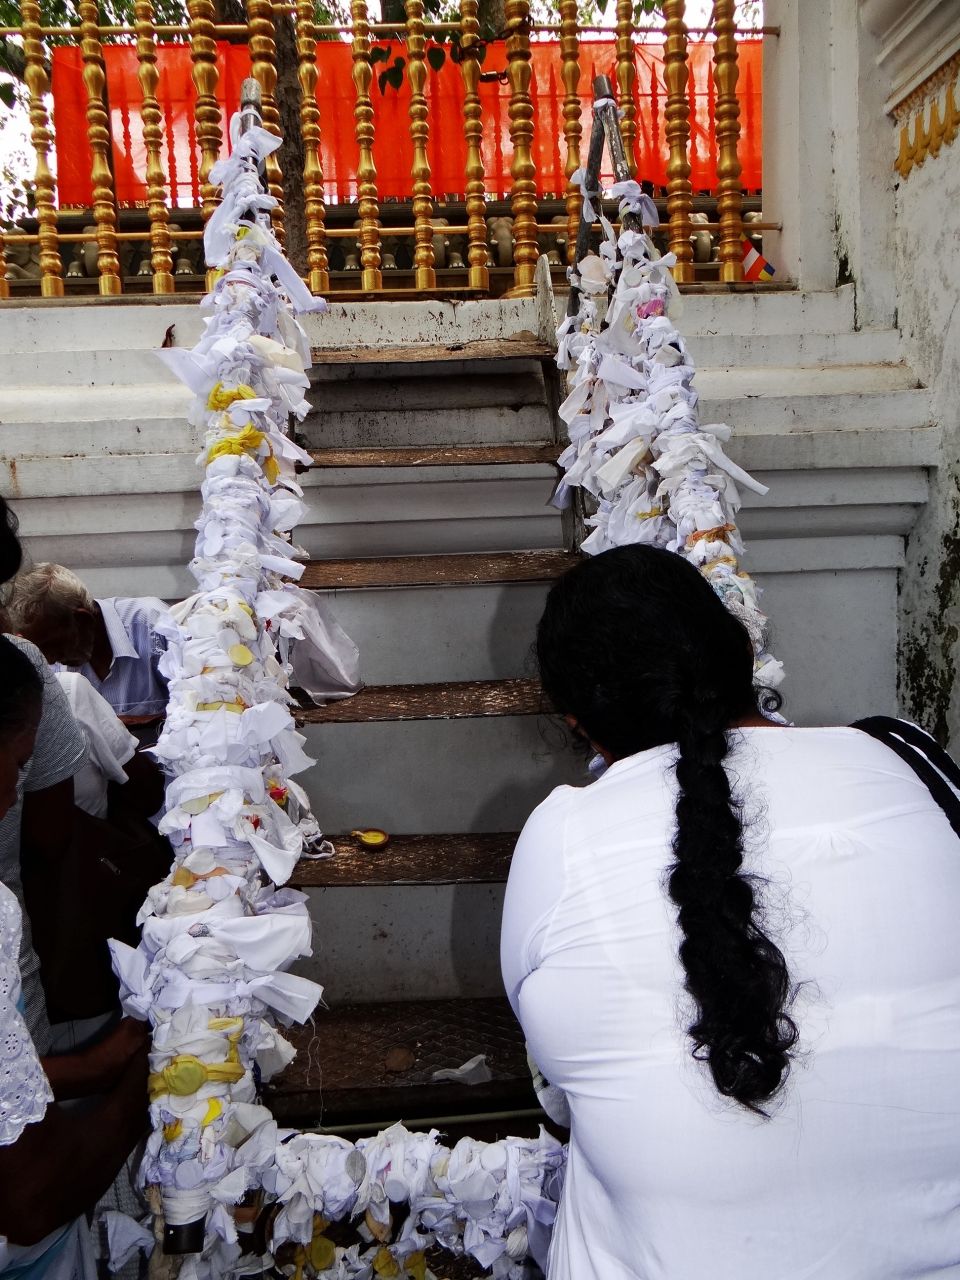 последний Будда нашего времени – индийский принц Сиддхартха Гаутама – именно под родителем этого дерева, достиг пробуждения (в европейских источниках чаше пишут «просветления», но слово «бодхи» означает именно  «пробуждение»). - Шри-Ланка 2017. Часть 2.